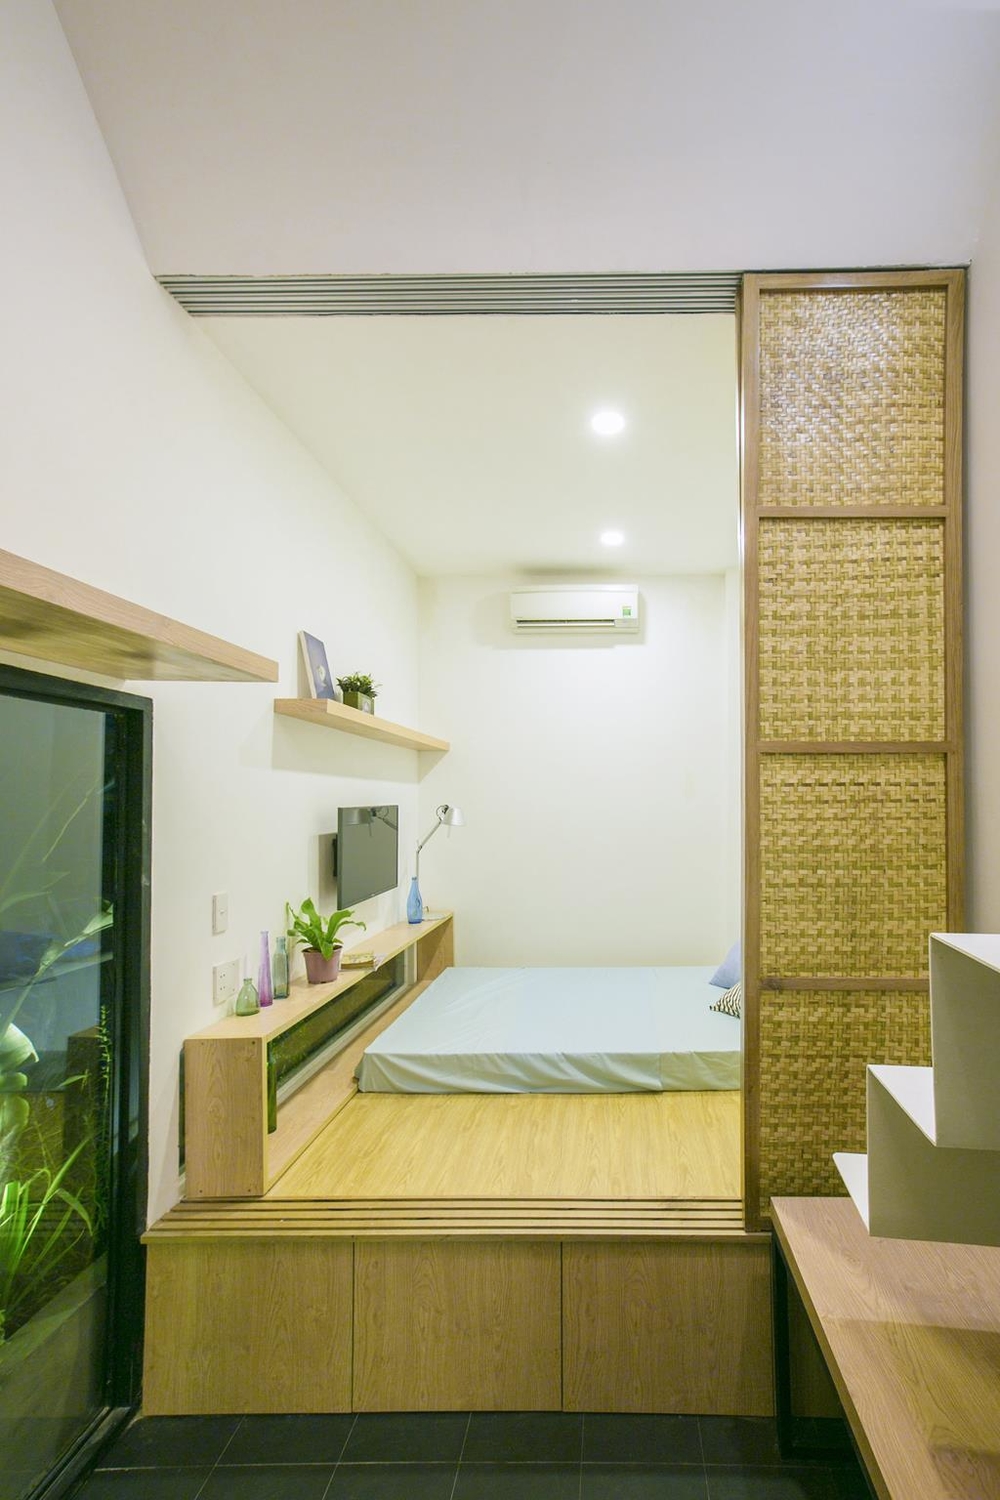 
Phòng ngủ với thiết kế cửa lùa tinh tế tạo nên một không gian riêng tư cho đôi vợ chồng trẻ